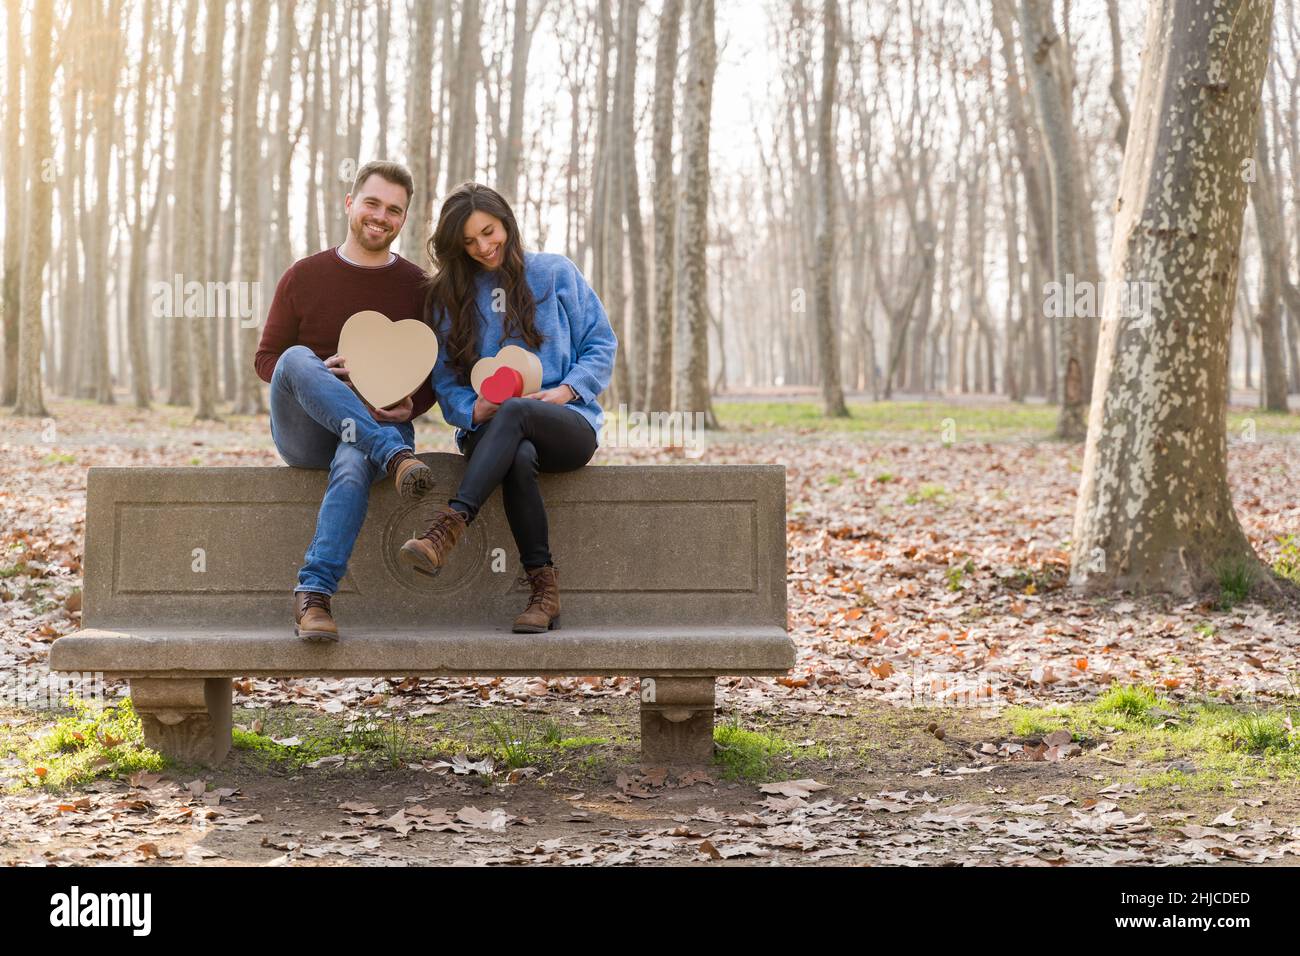 Jeune couple célébrant la Saint-Valentin en faisant un cadeau dans un parc Banque D'Images